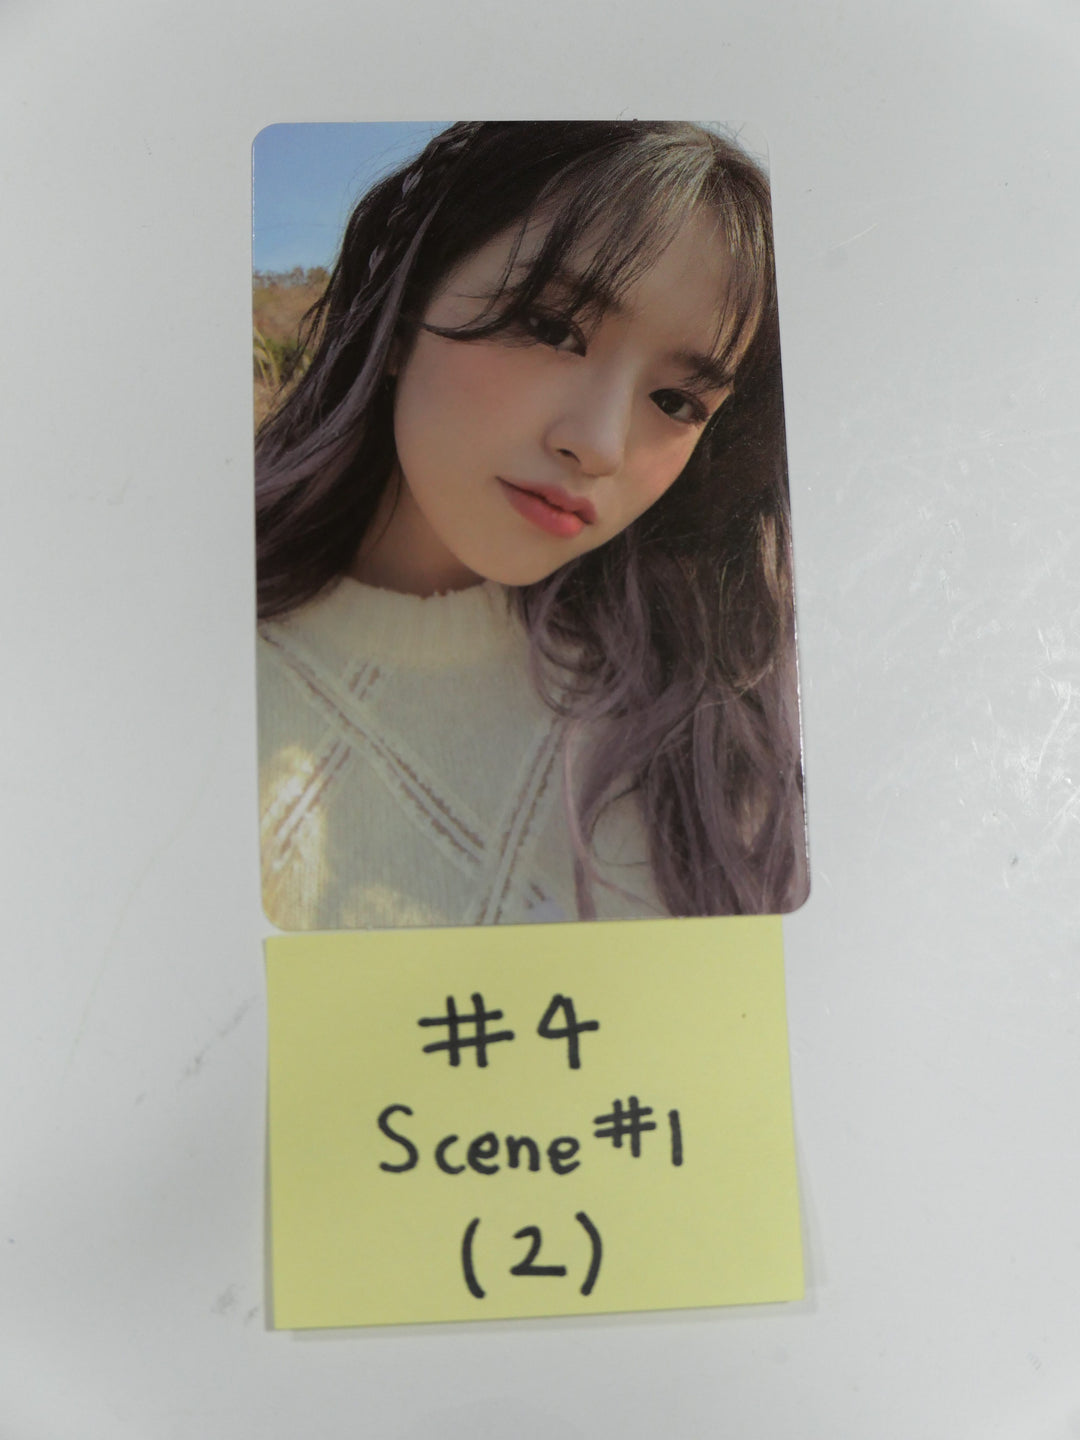 아이즈원 IZONE - ONE REELER SCENE #1 #3 미공개 포토카드